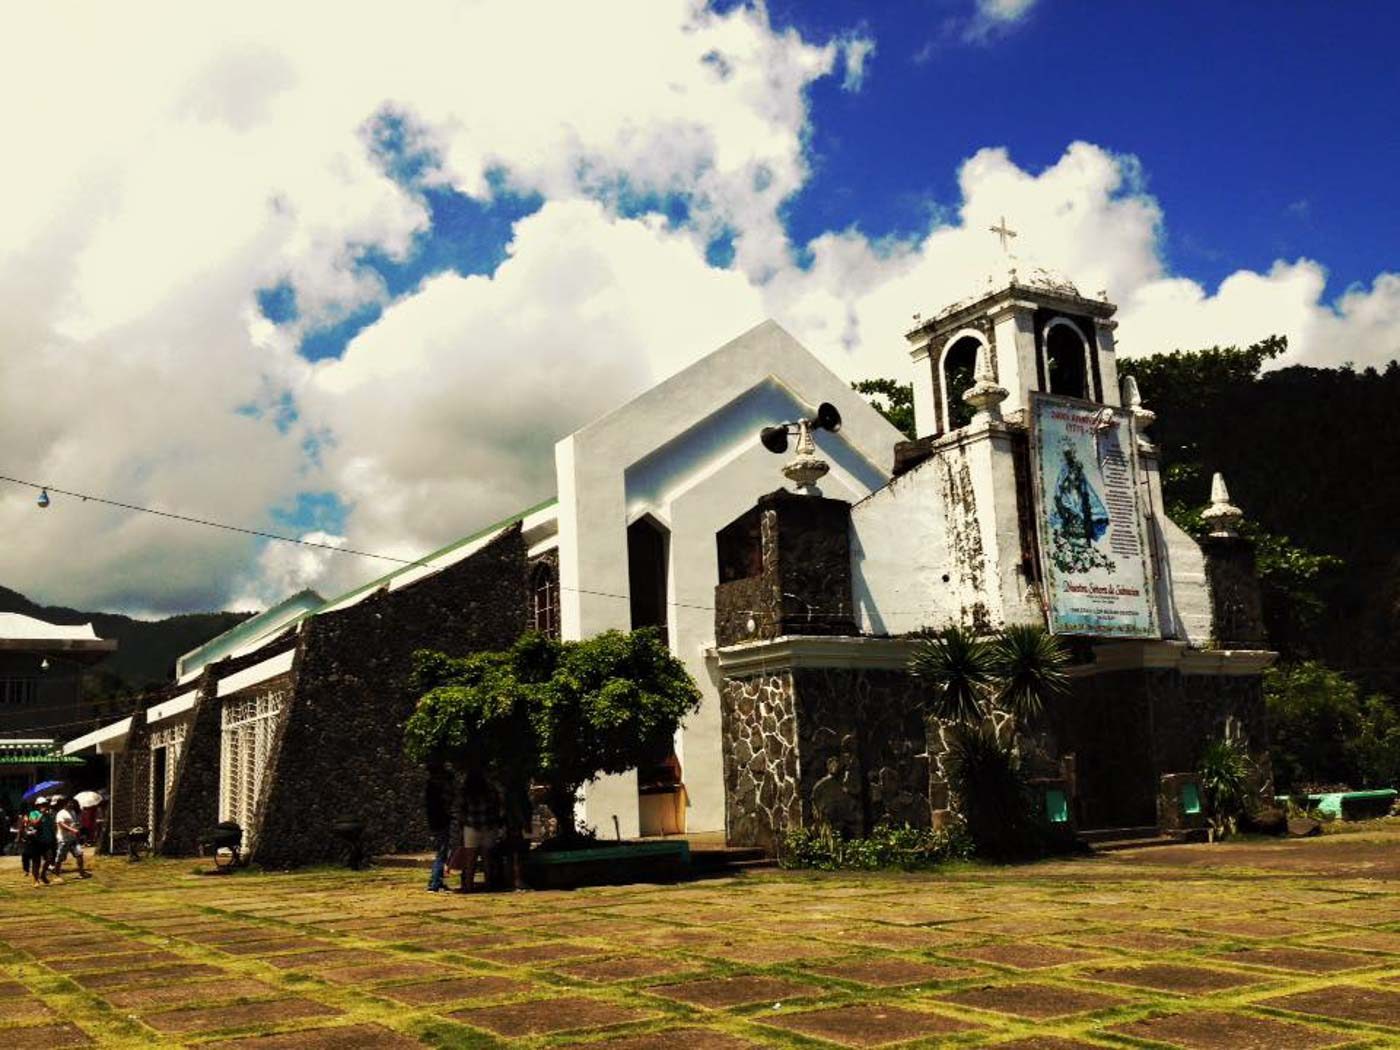 Touring Albay’s churches through Visita Iglesia